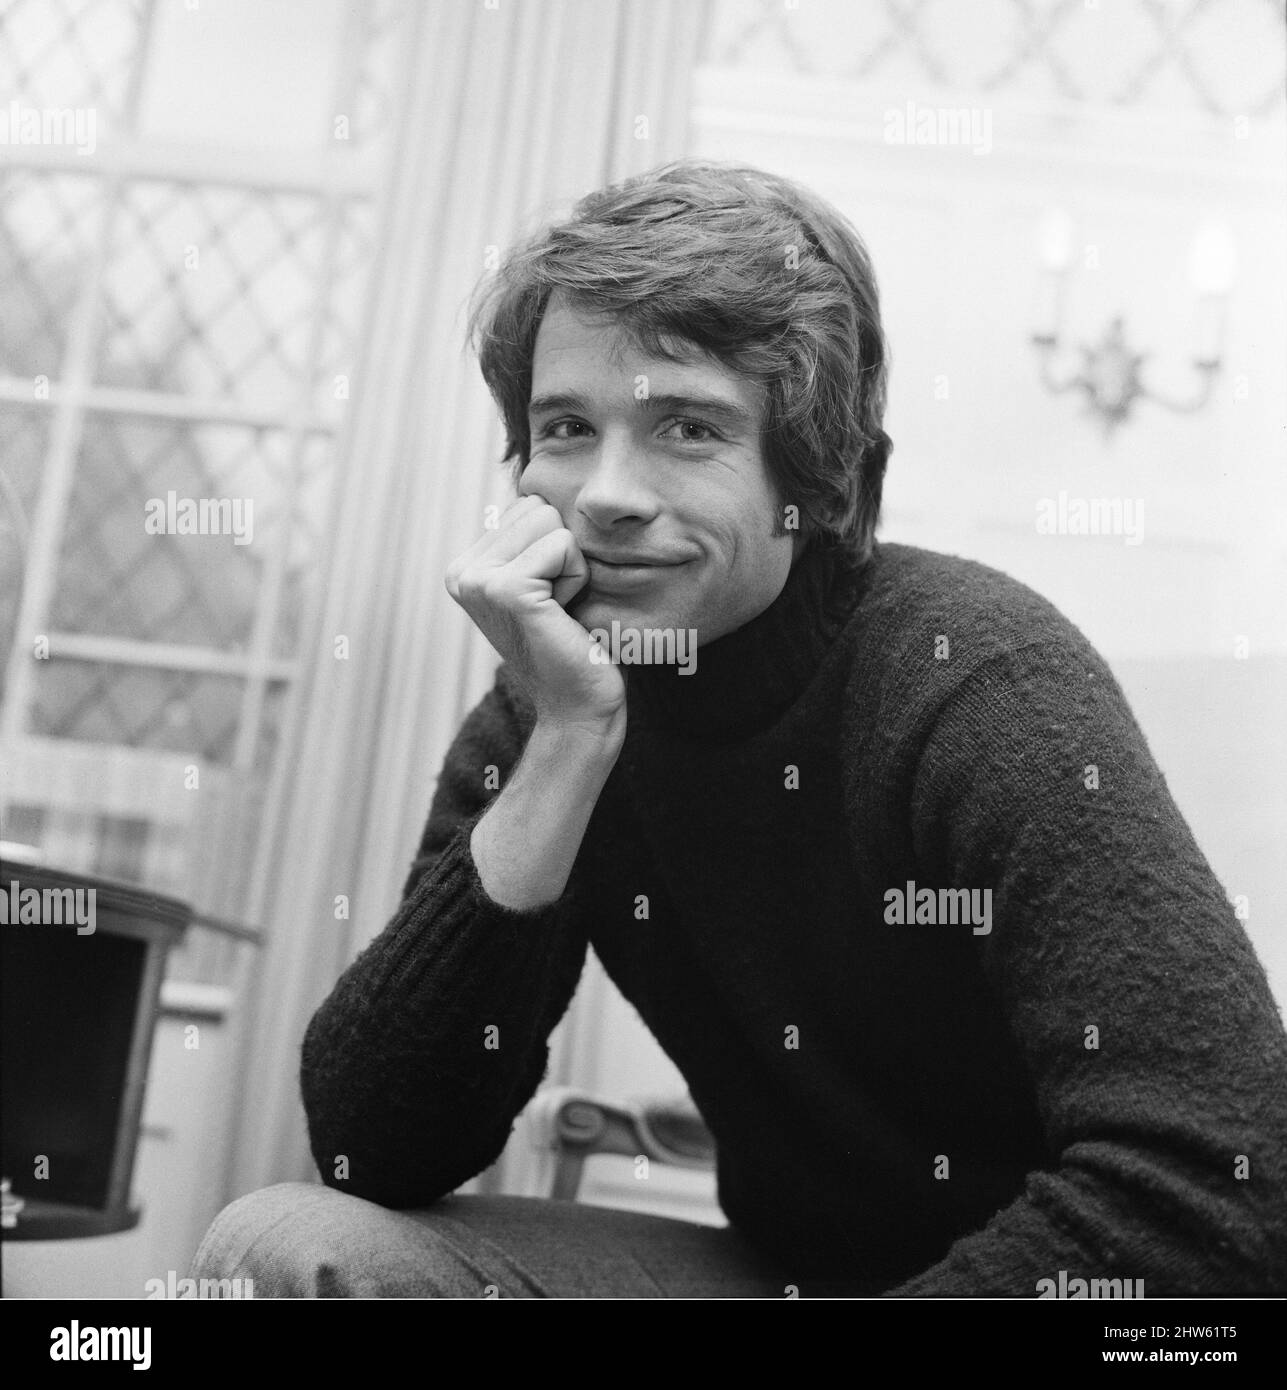 Warren Beatty, attore americano, ritratto nel suo appartamento di Londra in South Audley Street, immagine presa 15th marzo 1968 Foto Stock